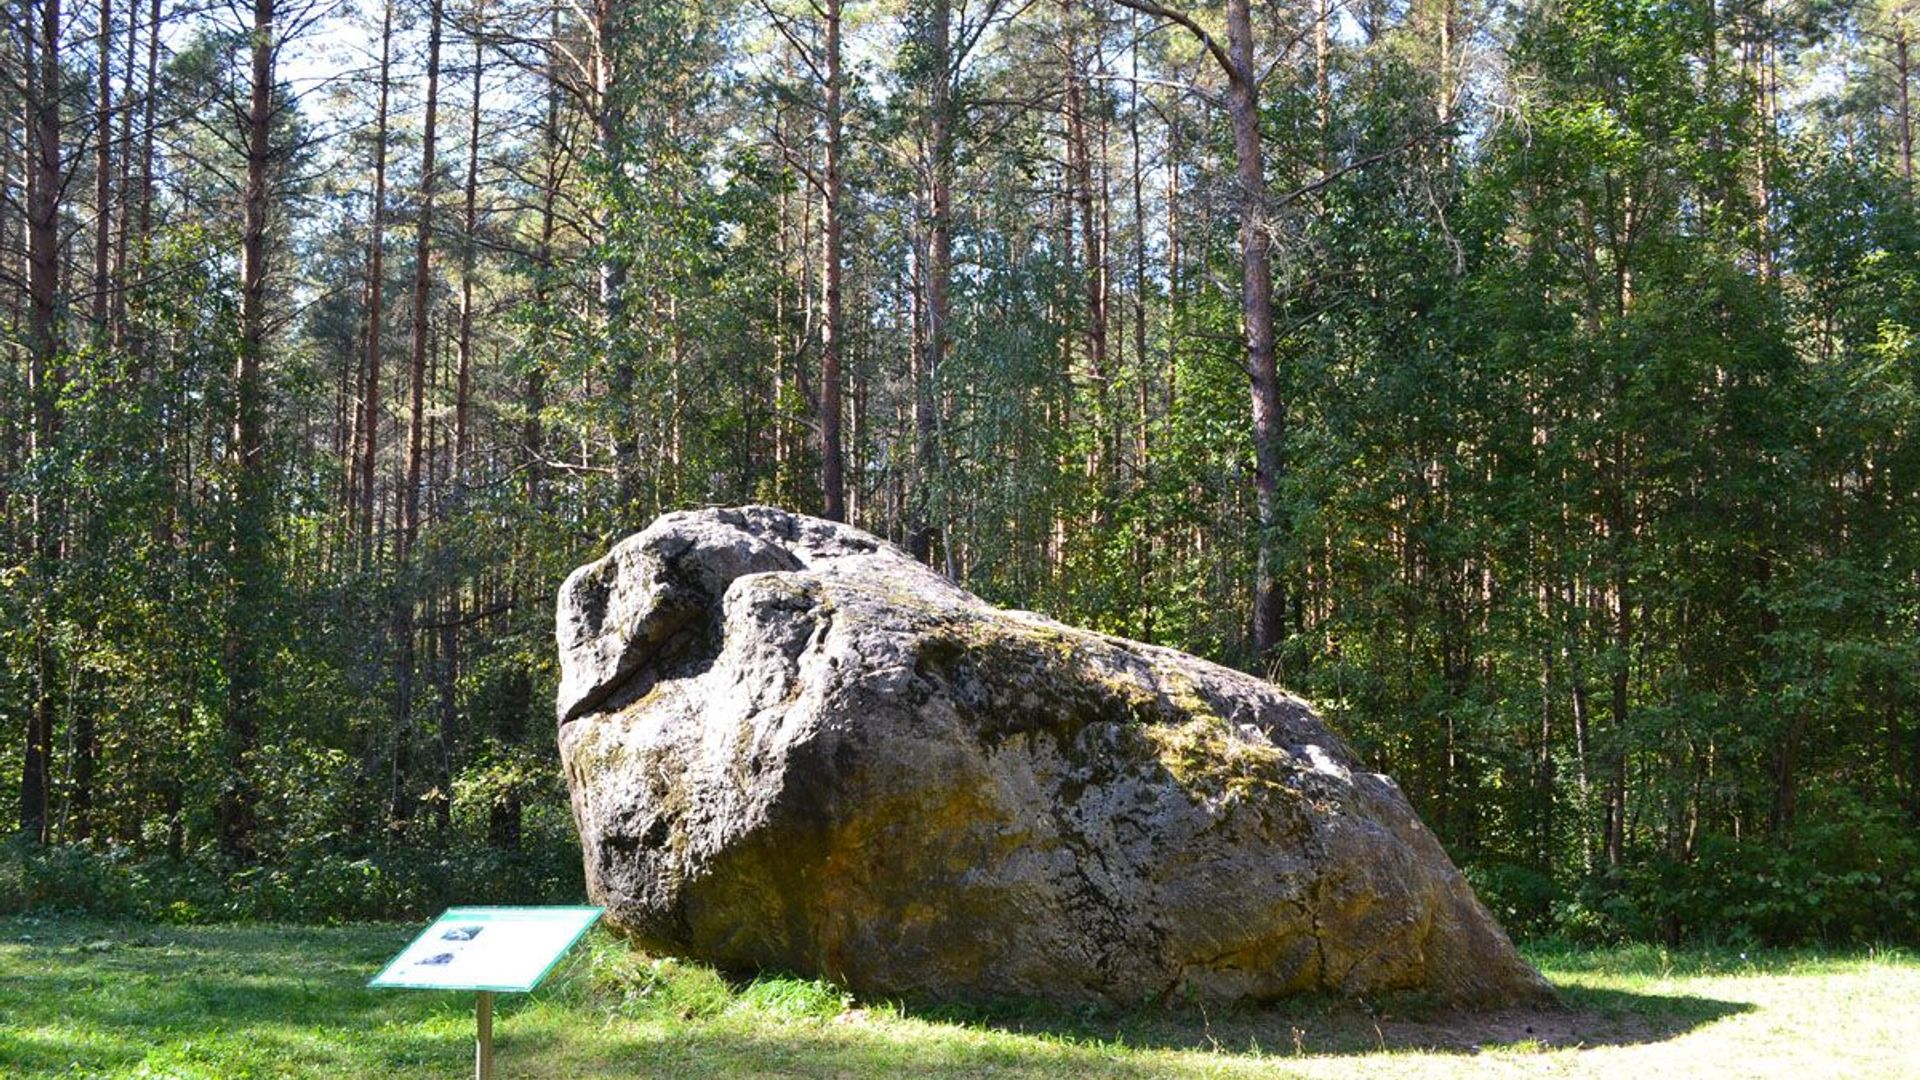 The Giant Stone of Dzūkija